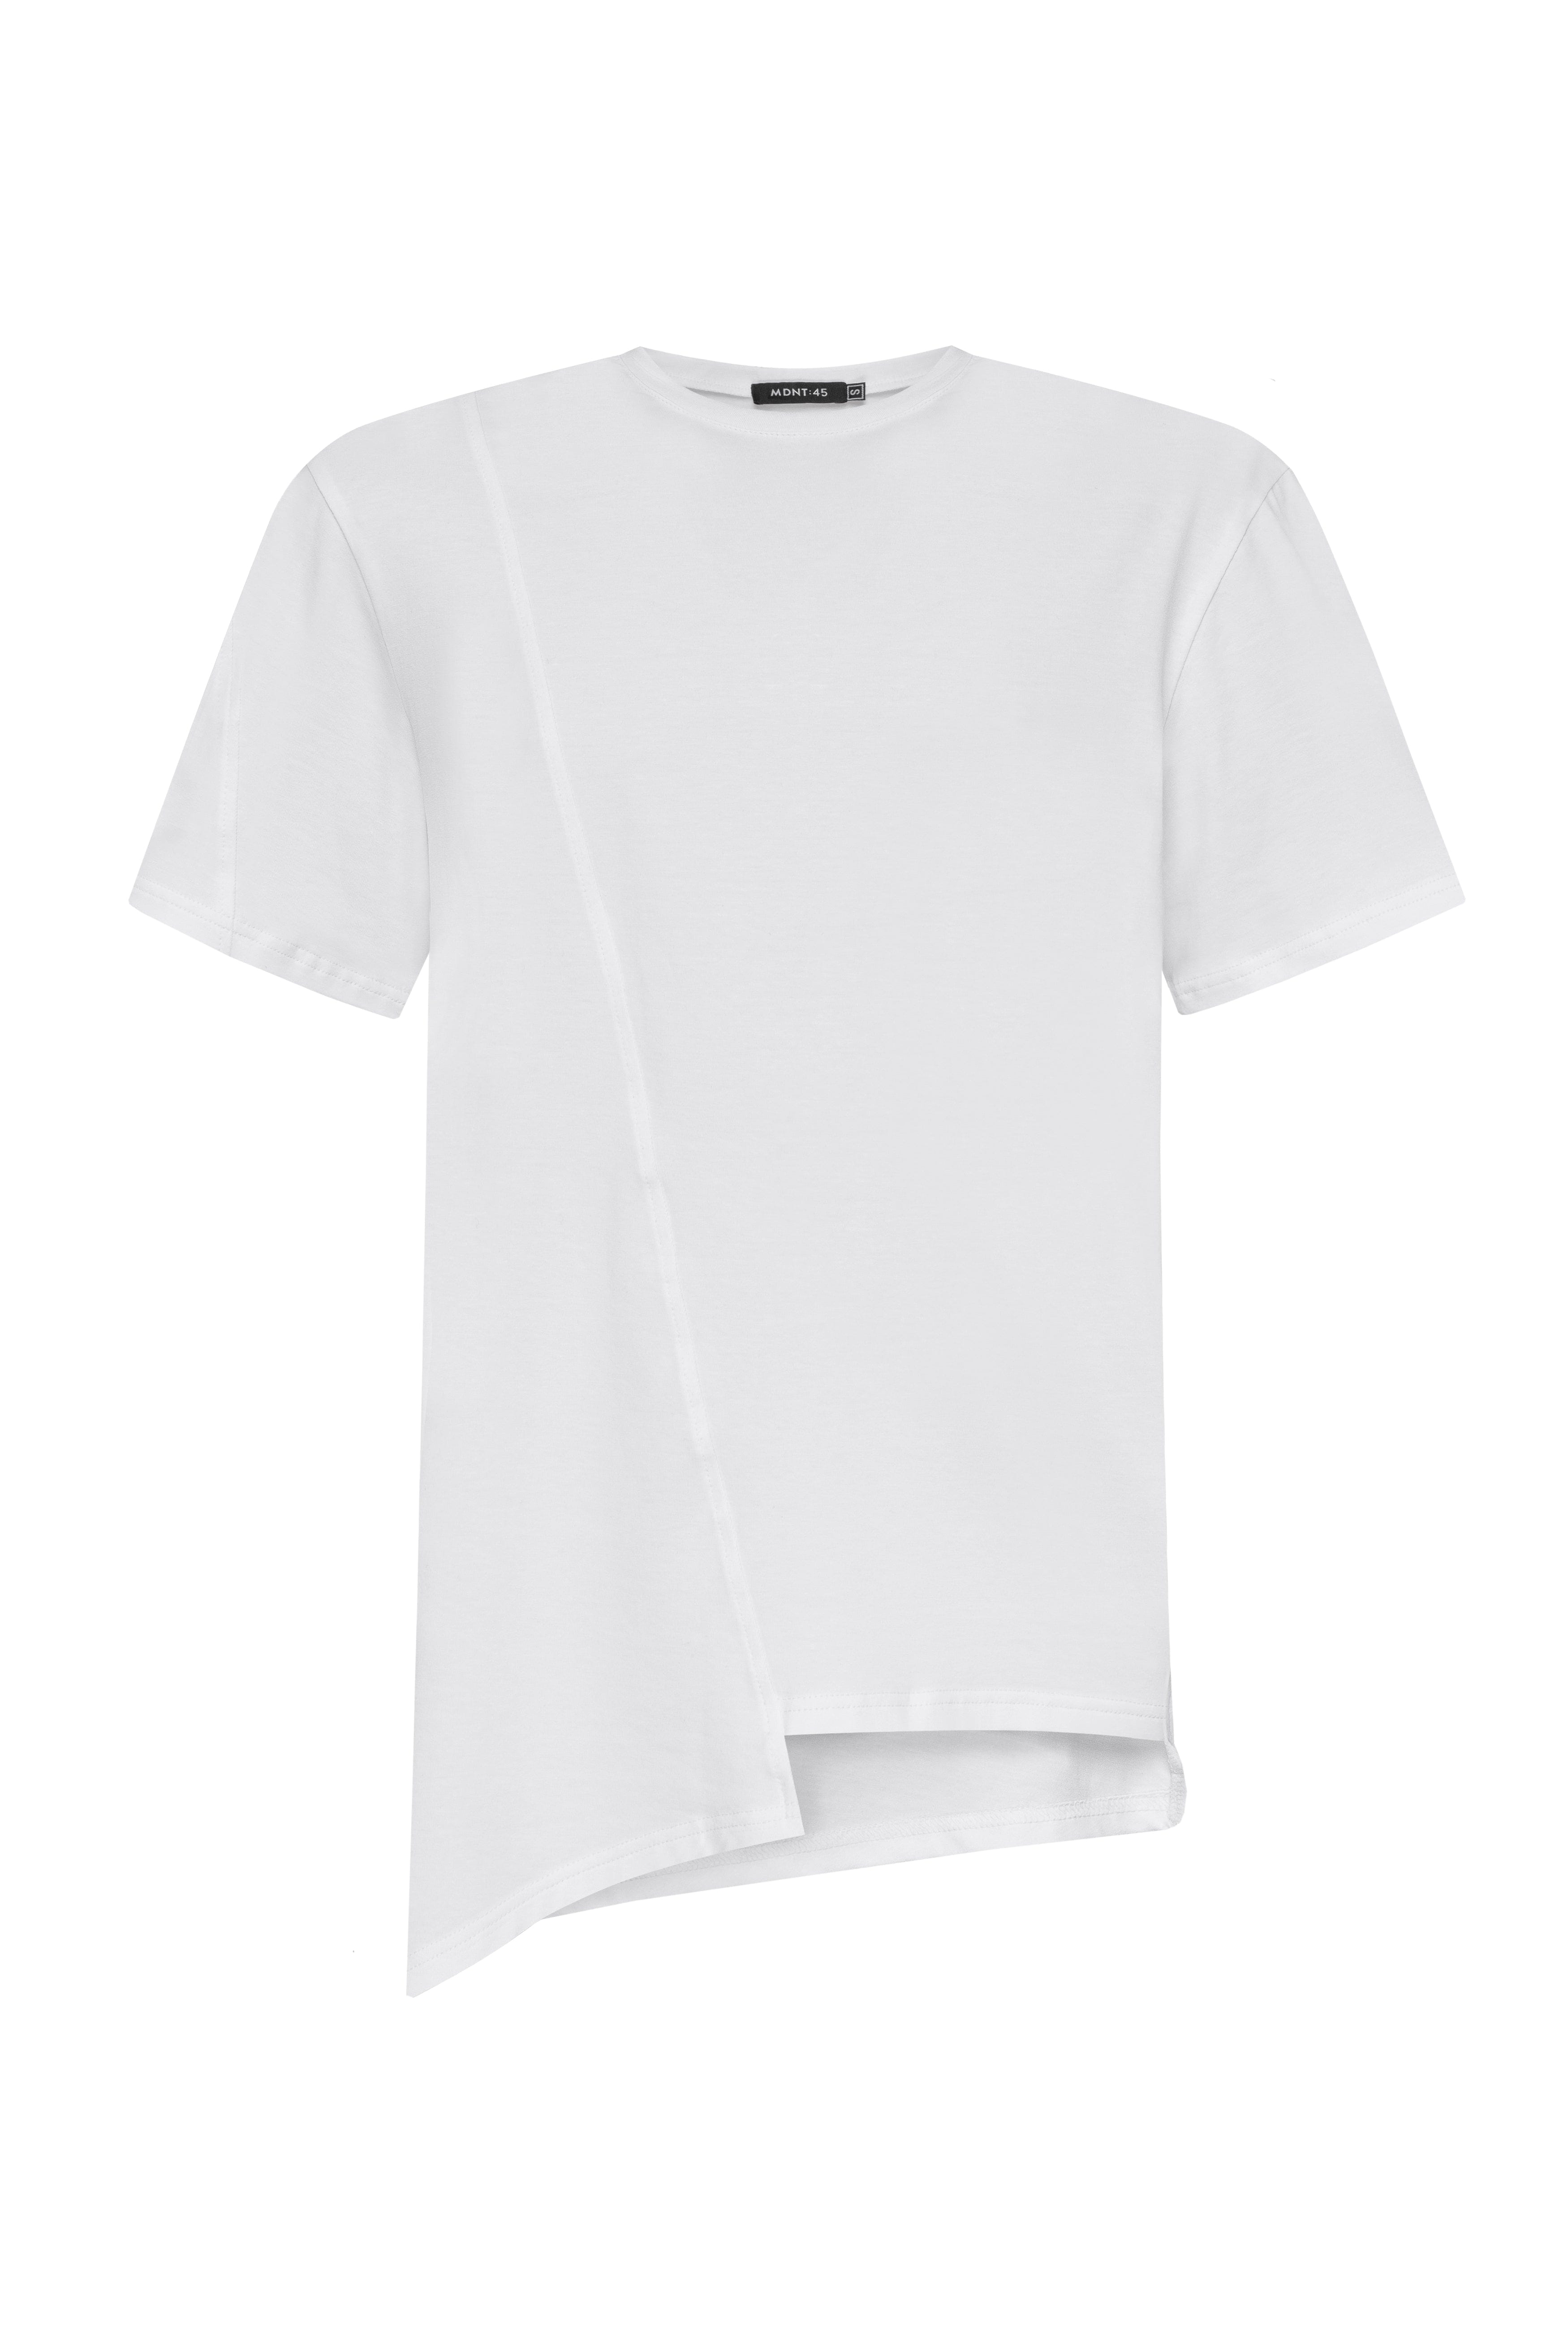 MDNT45 Zaidan T-shirt White